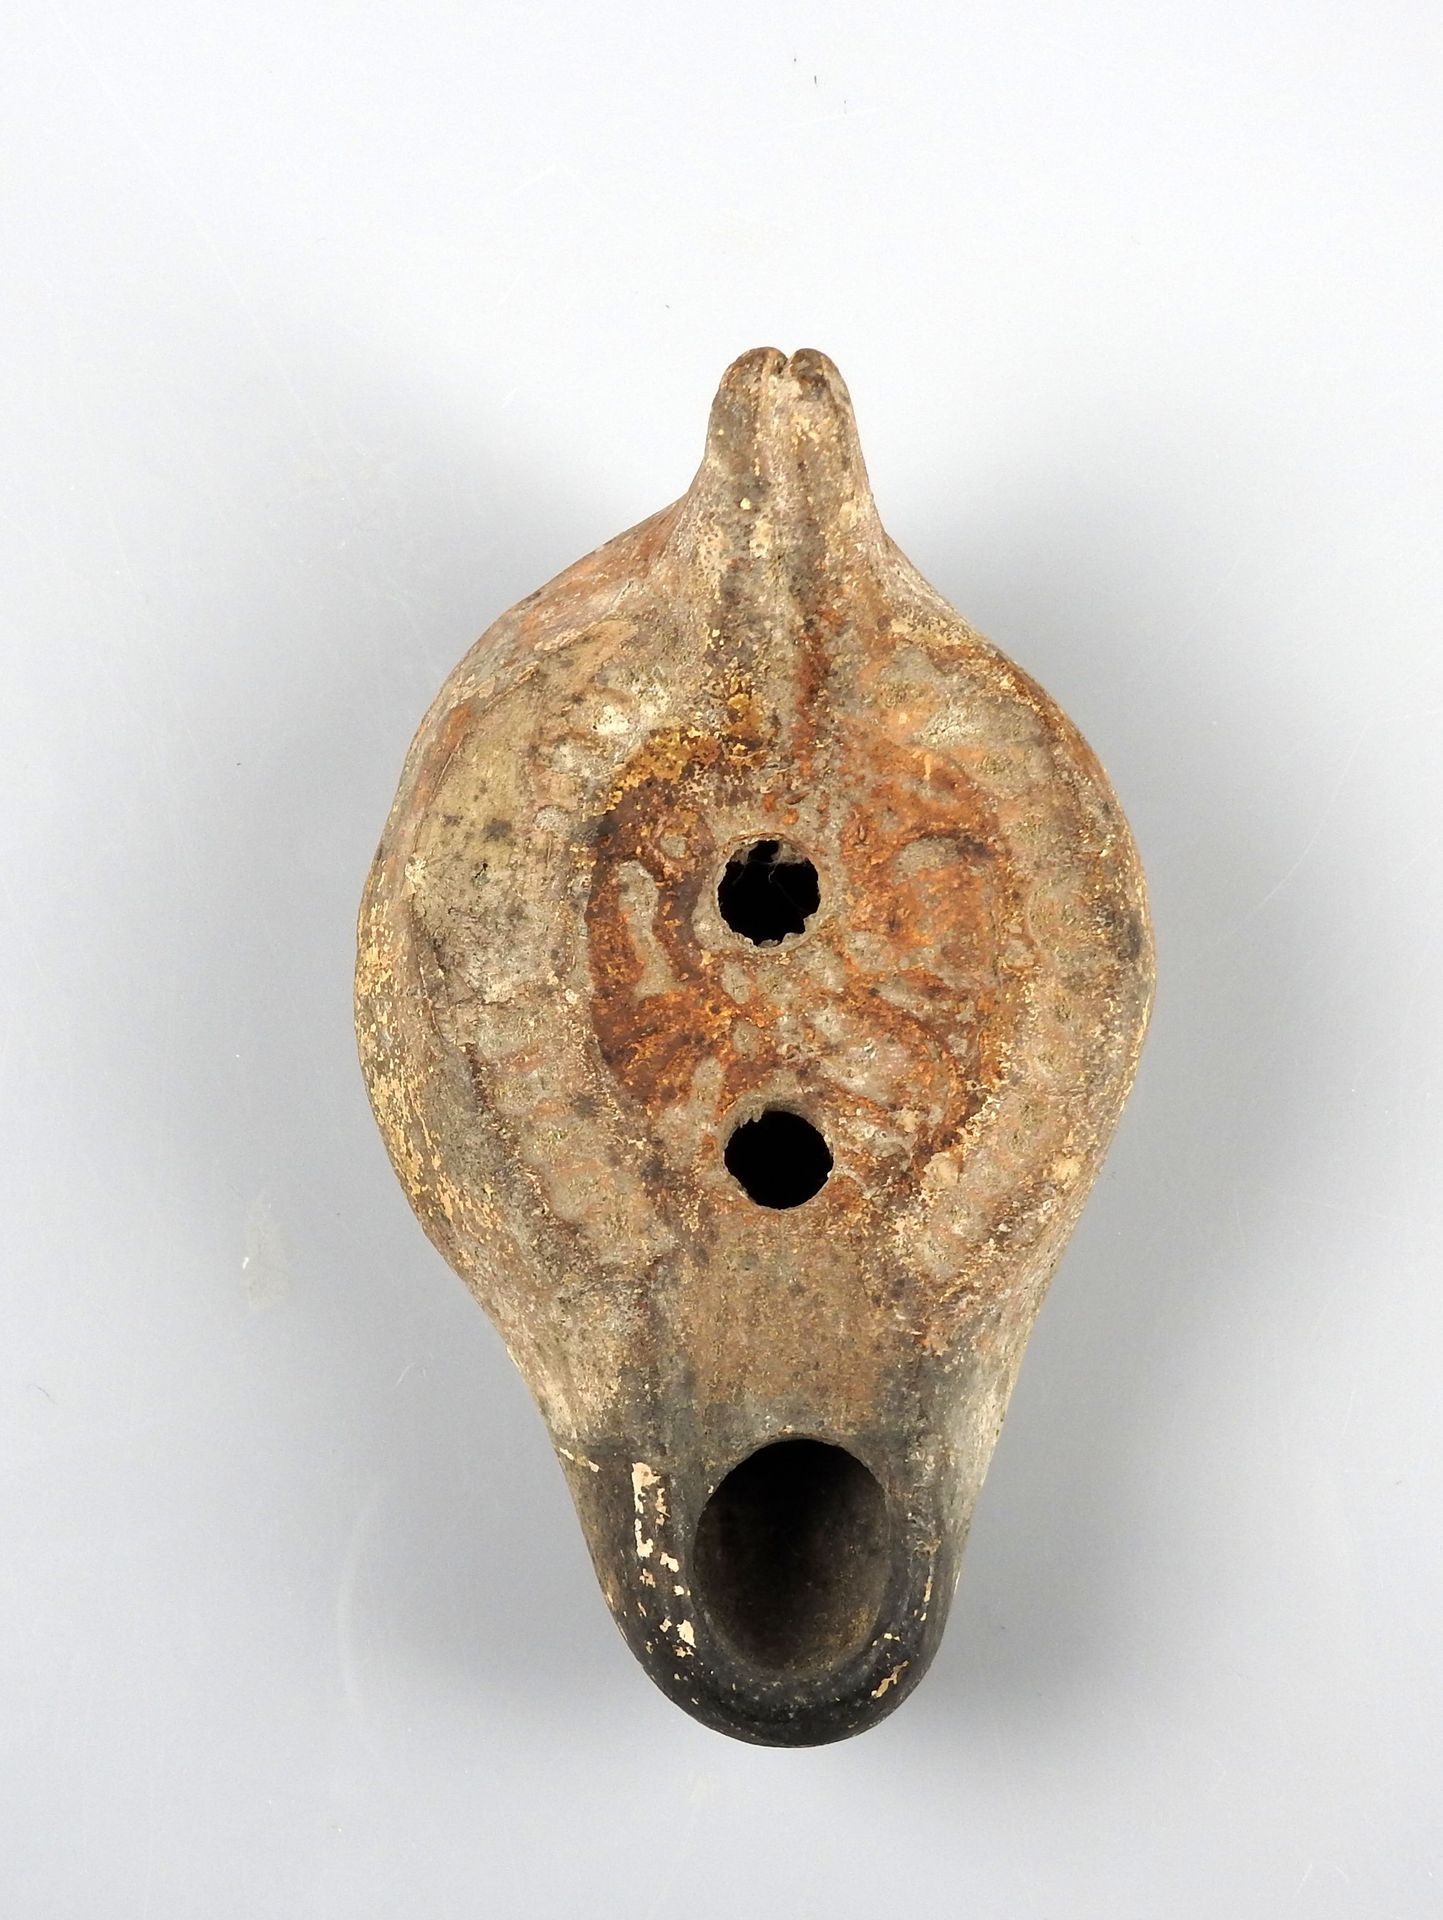 Null 带有通道和双鸟设计的油灯（罕见的设计）。

前任大人物收藏

陶器10厘米

罗马时期 IV-V世纪